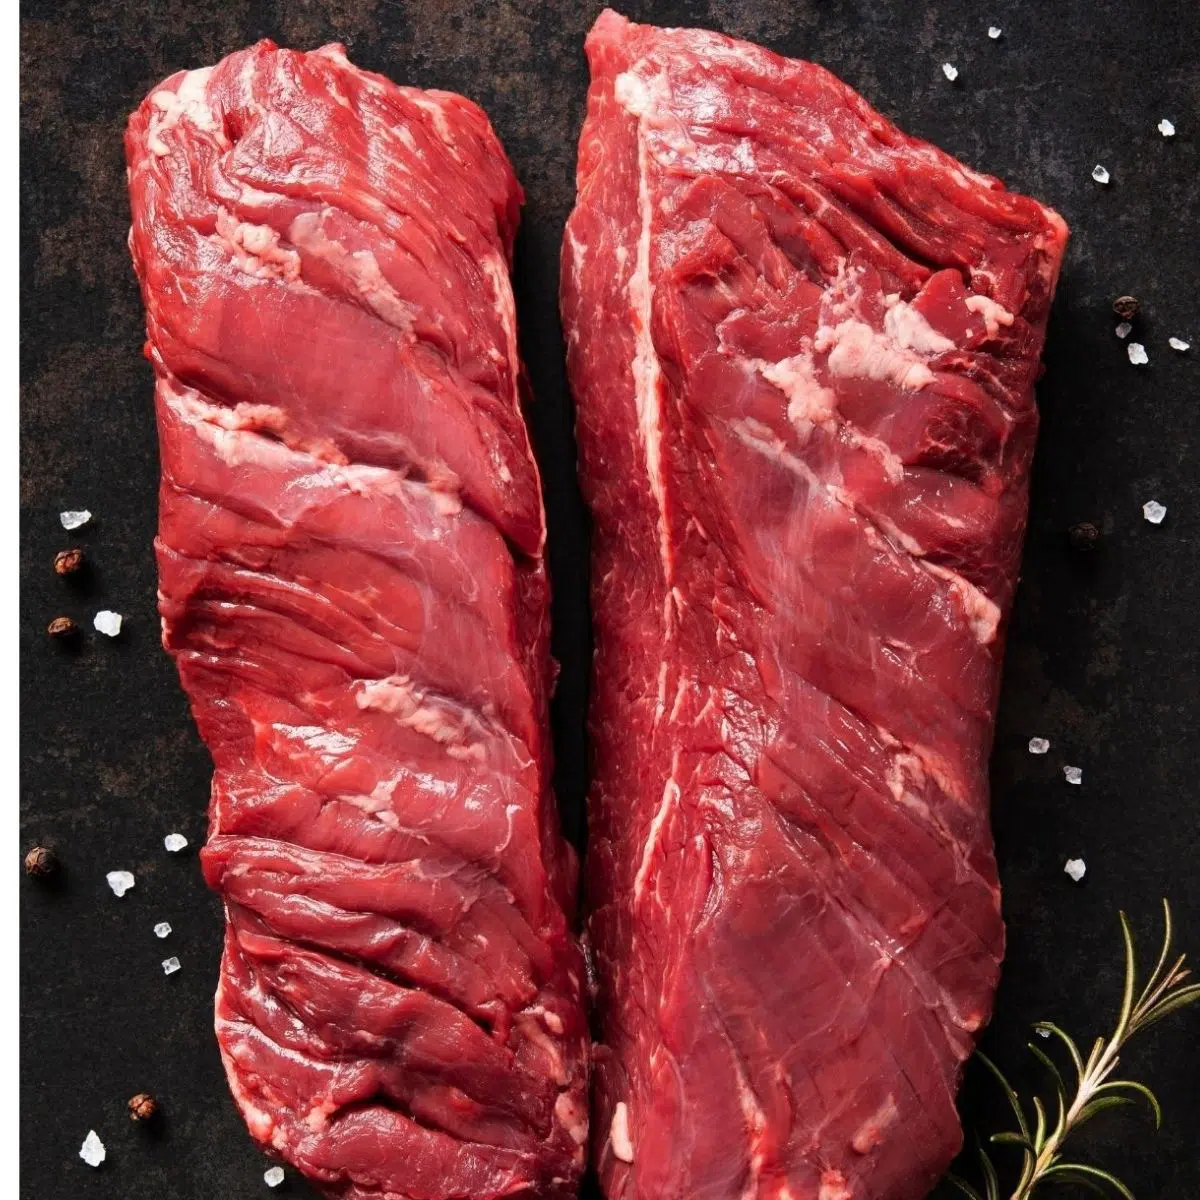 ما هي شريحة لحم الحظيرة بما في ذلك الأسماء الأخرى لقطع اللحم البقري اللذيذة.